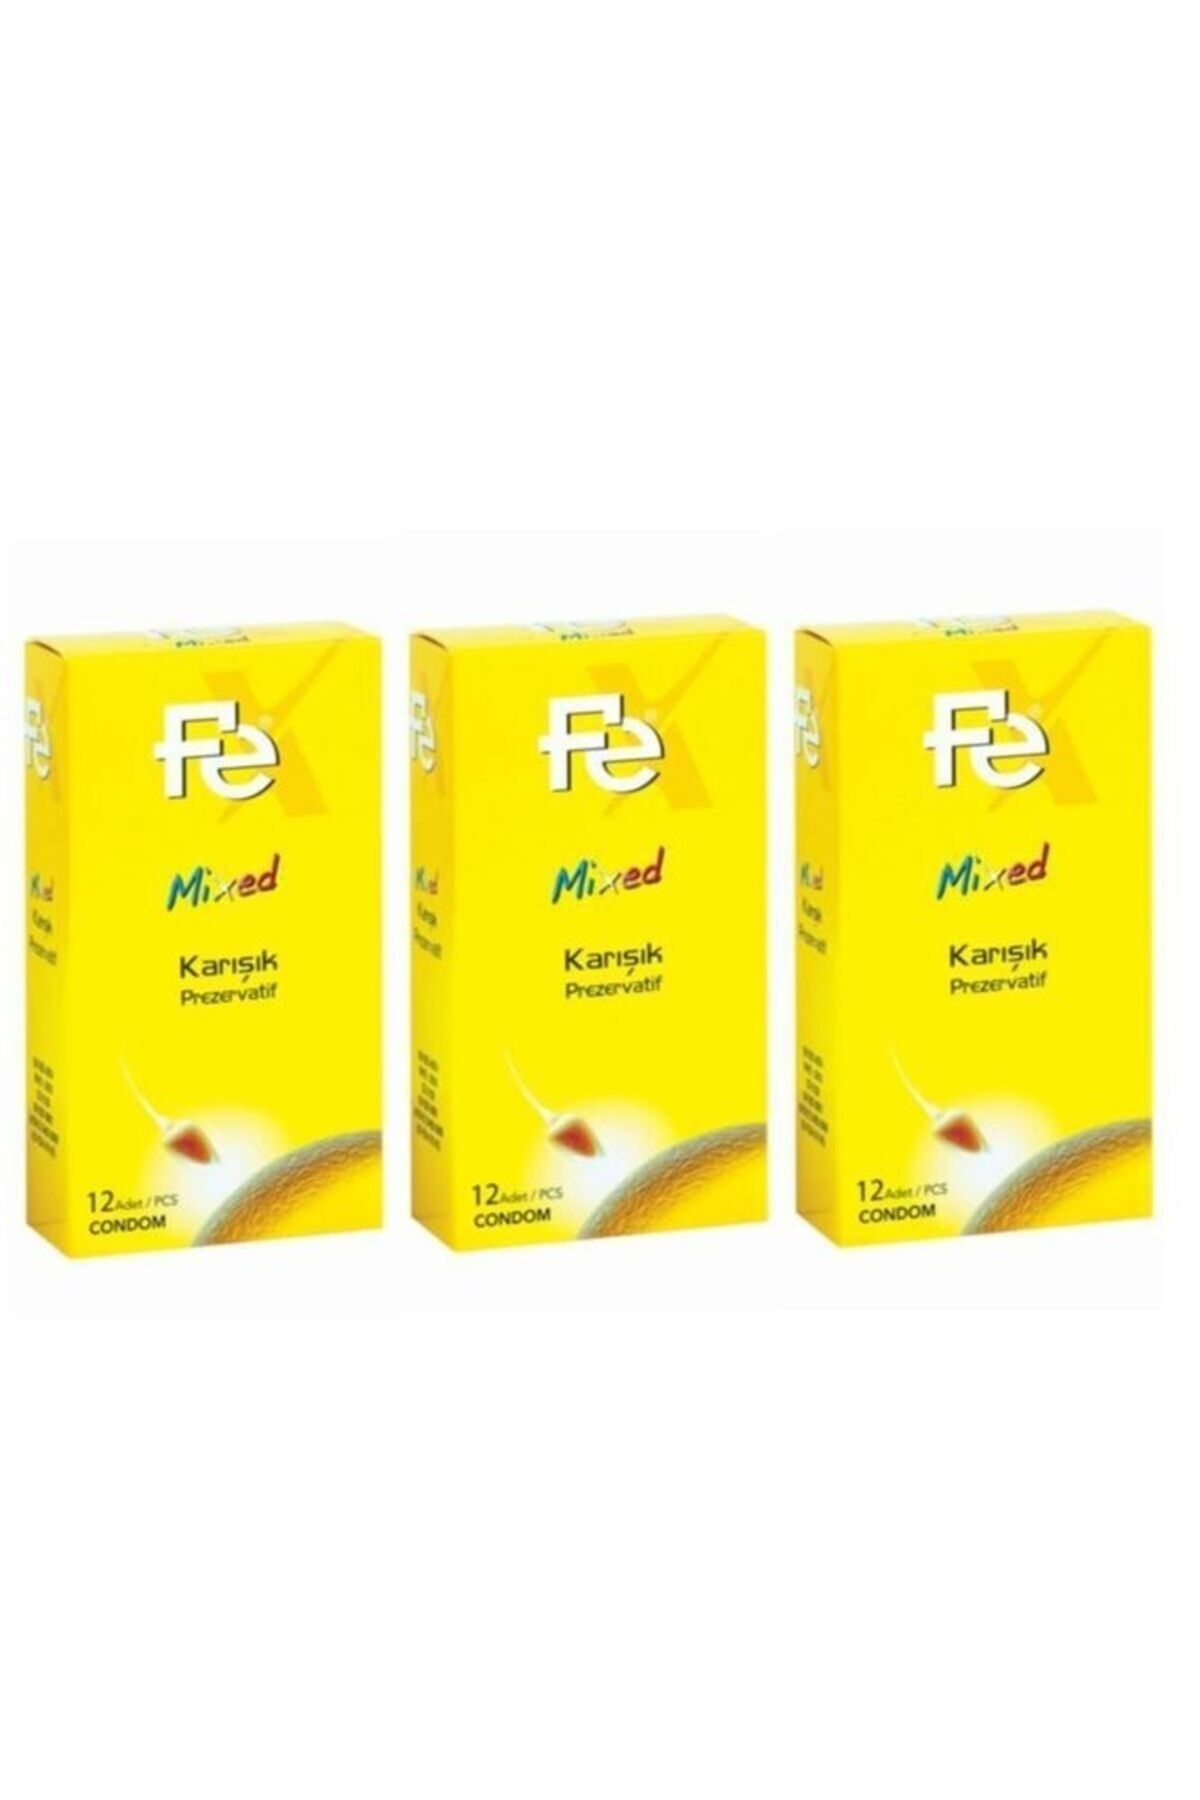 Fe Mixed Karışık Prezervatif 12'li (condom) * 3 Paket